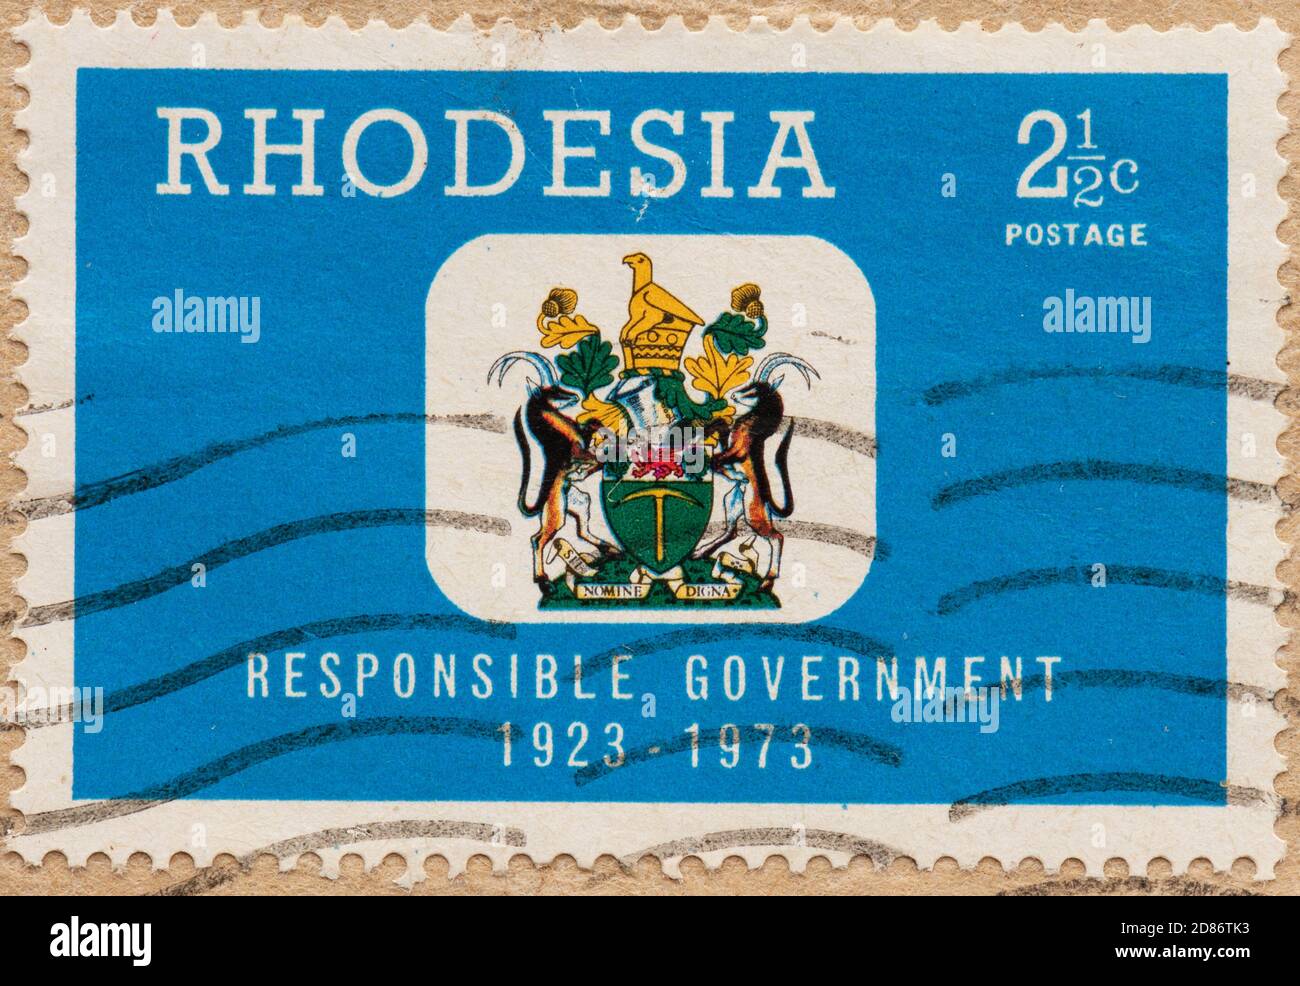 Rhodesien verantwortungsvolle Regierung 1923 - 1973 Briefmarke Stockfoto